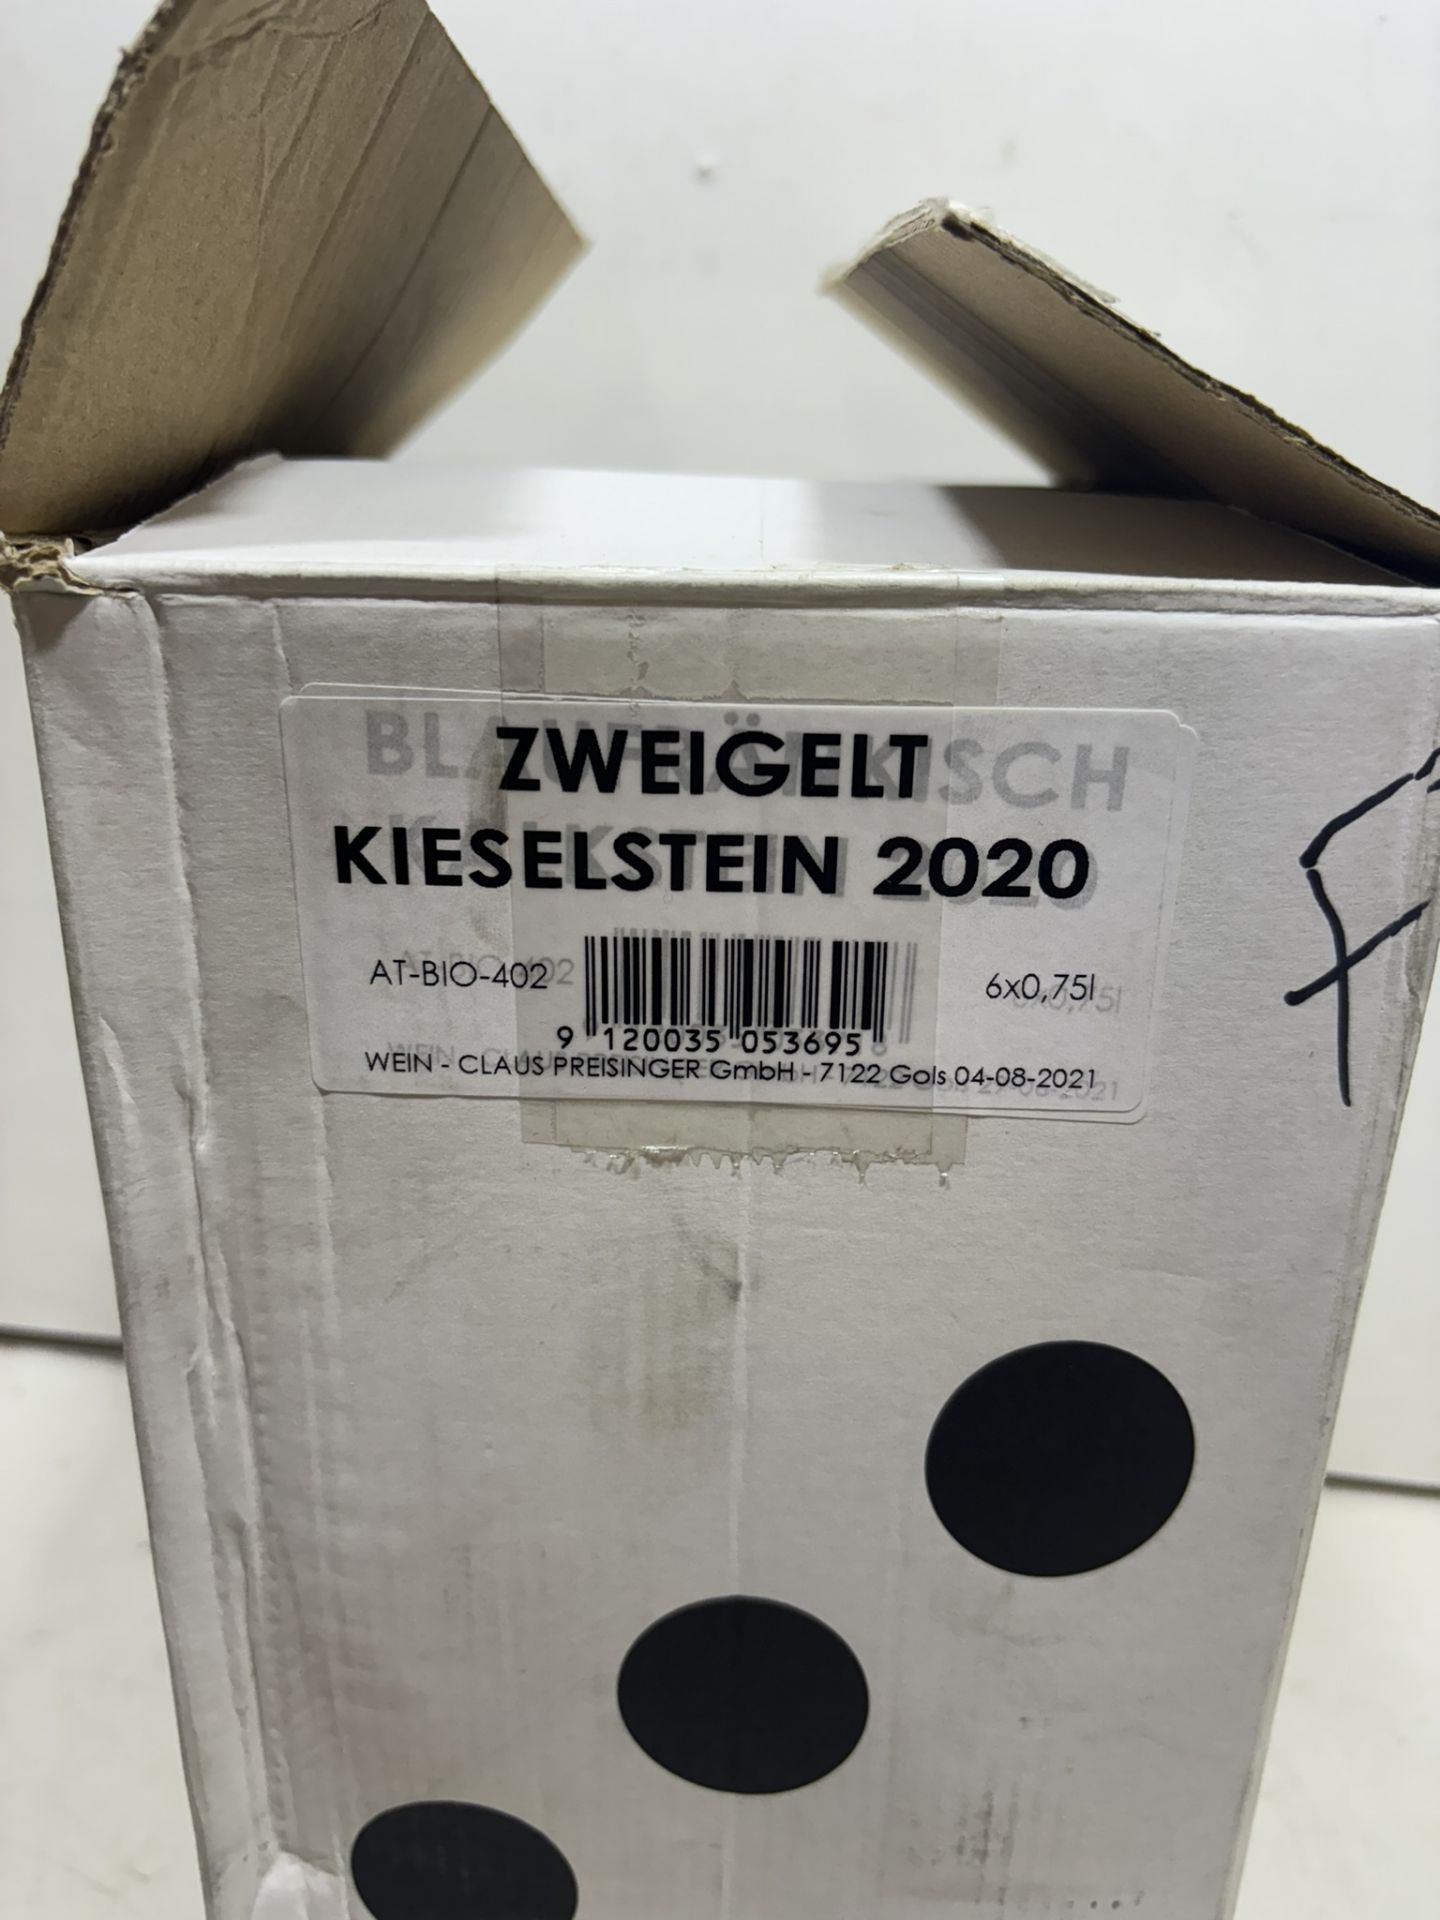 8 X Bottles Claus Preisinger Zweiglet 75Cl 2020 - Image 7 of 7